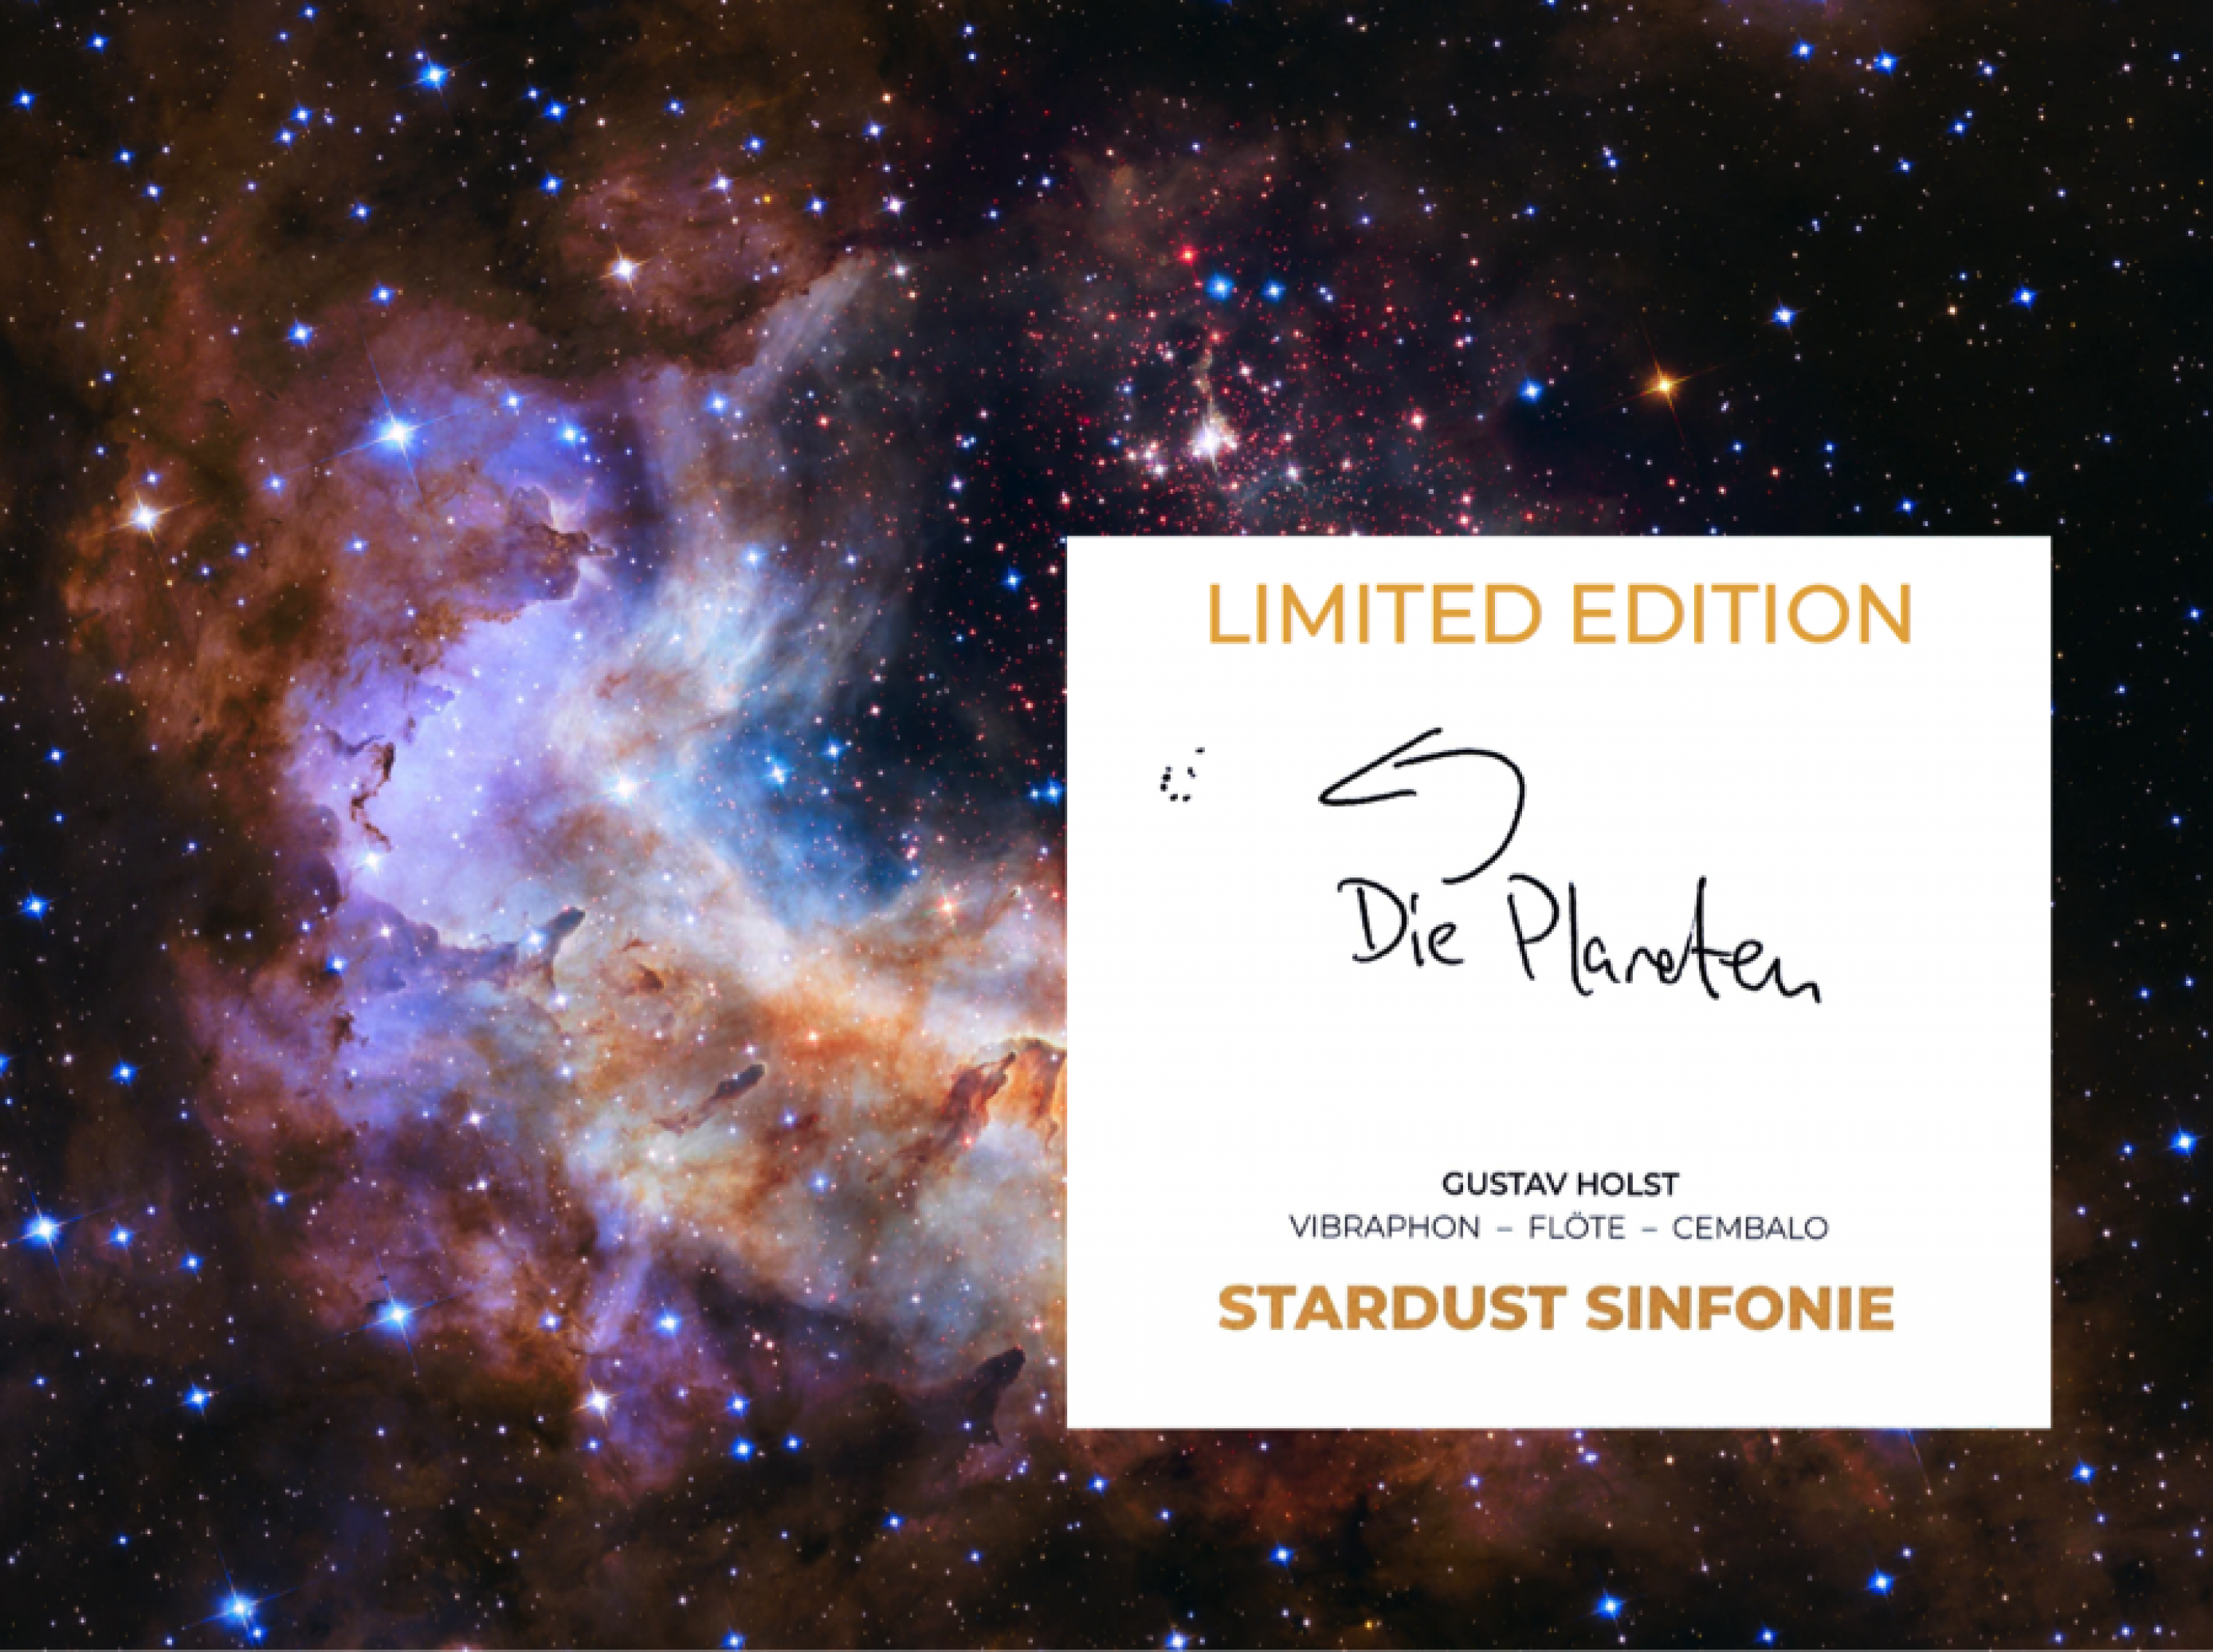 CD von Stardust Sinfonie vor Weltraumbild